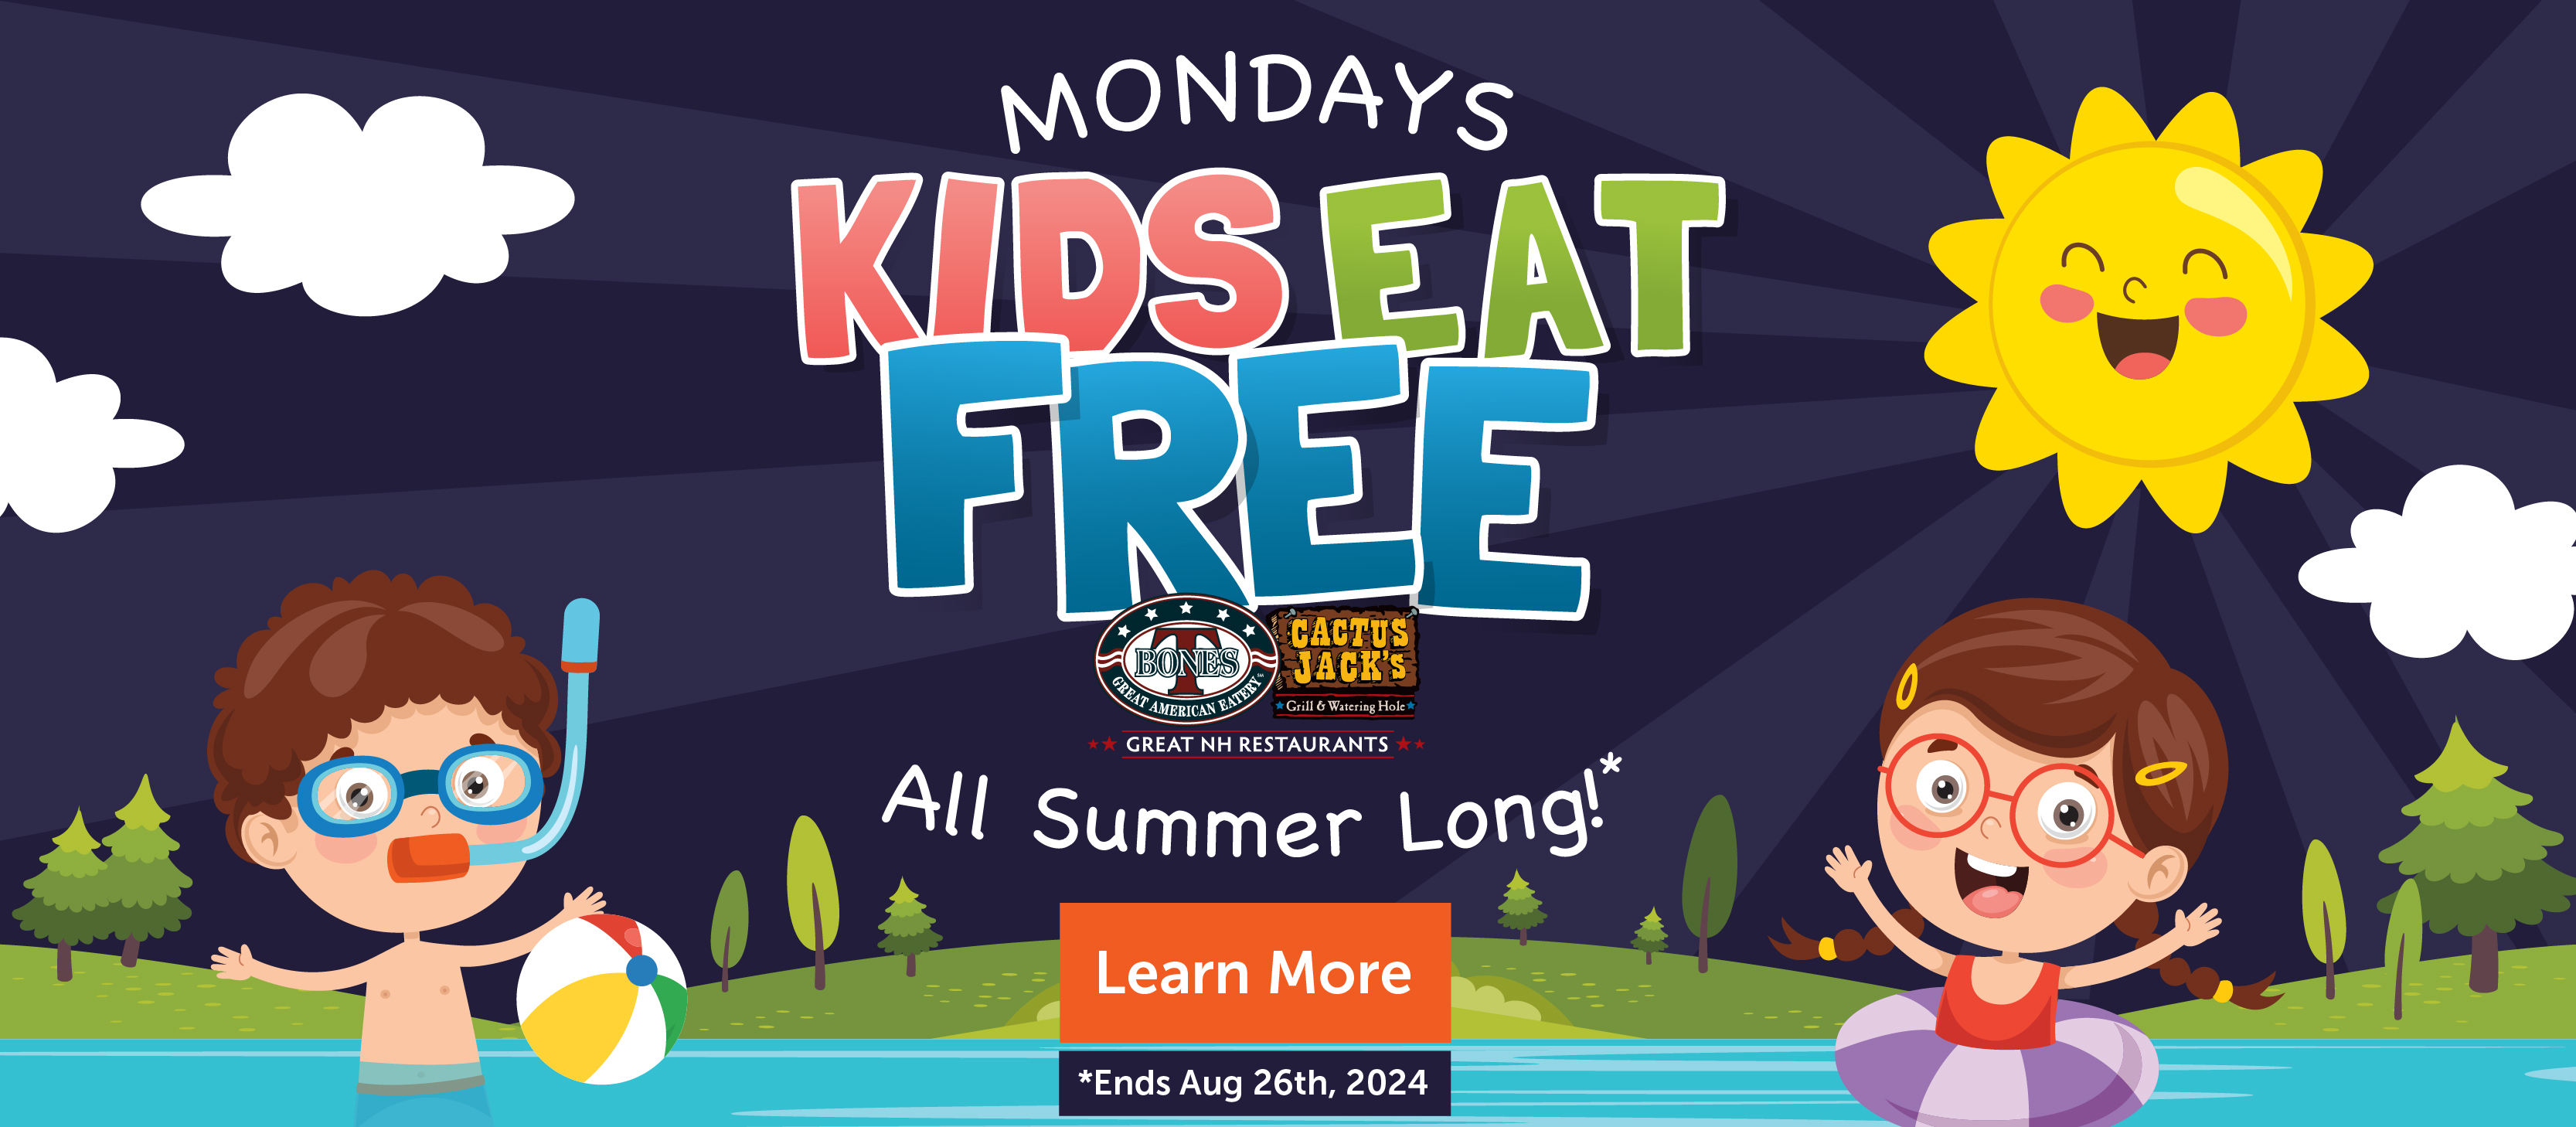 Mondays Kids Eat FREE*